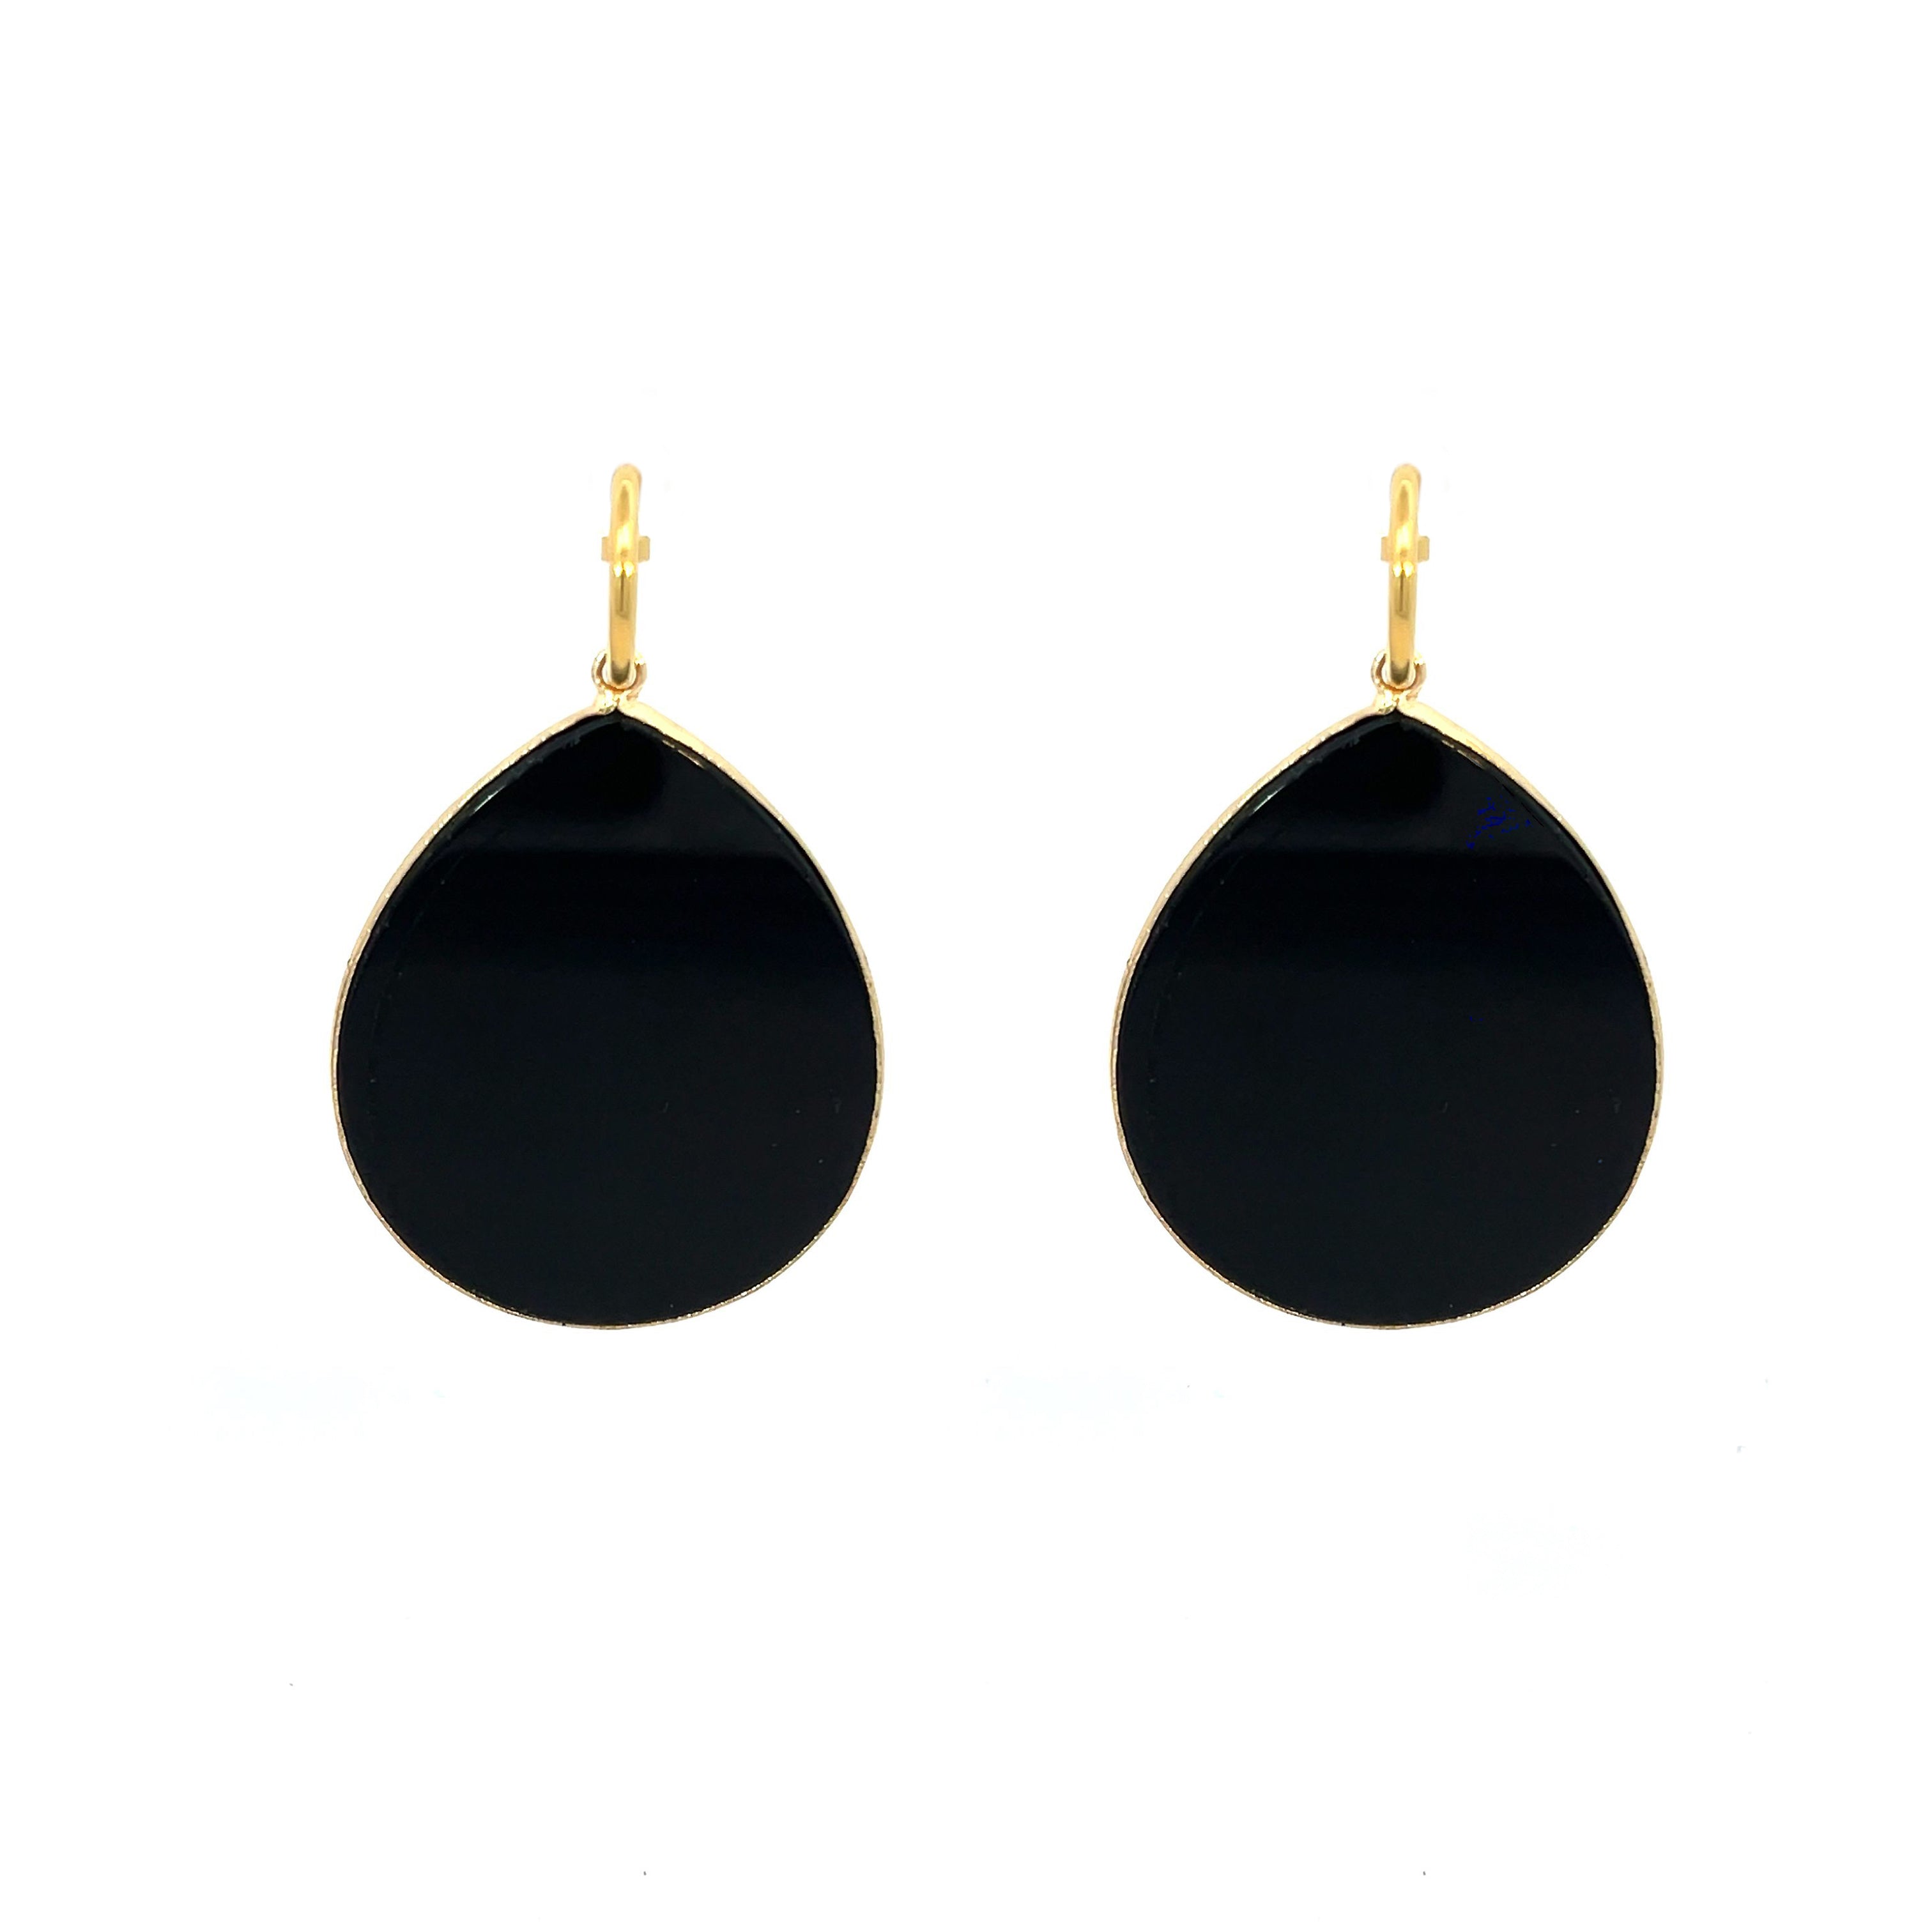 New Heavenly Beauty Oval Drop Earrings/Grounded/Black Obsidian